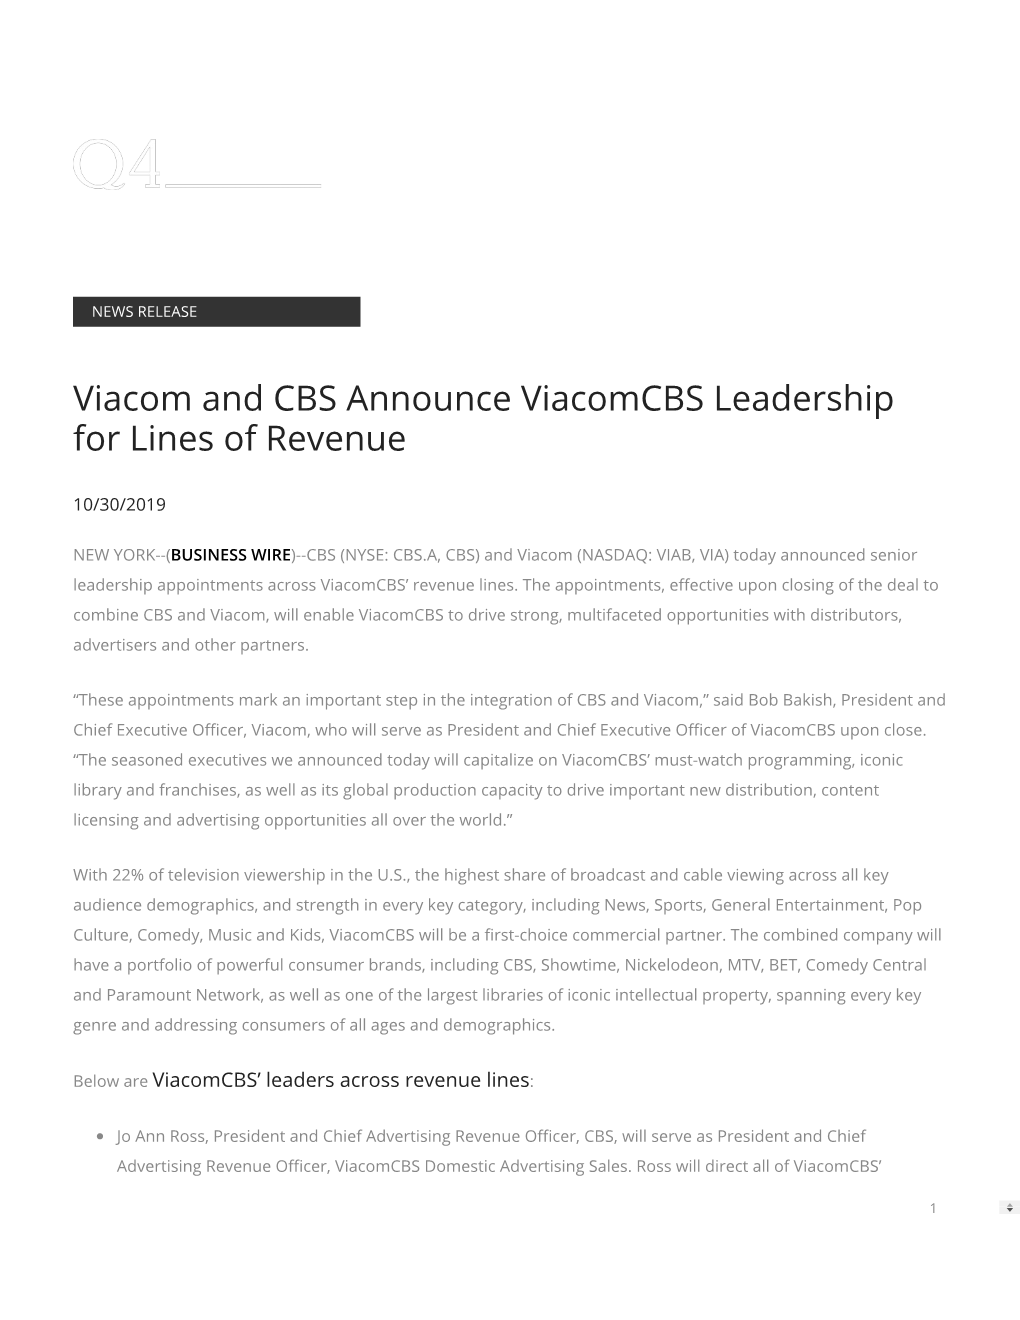 Viacom and CBS Announce Viacomcbs Leadership for Lines of Revenue